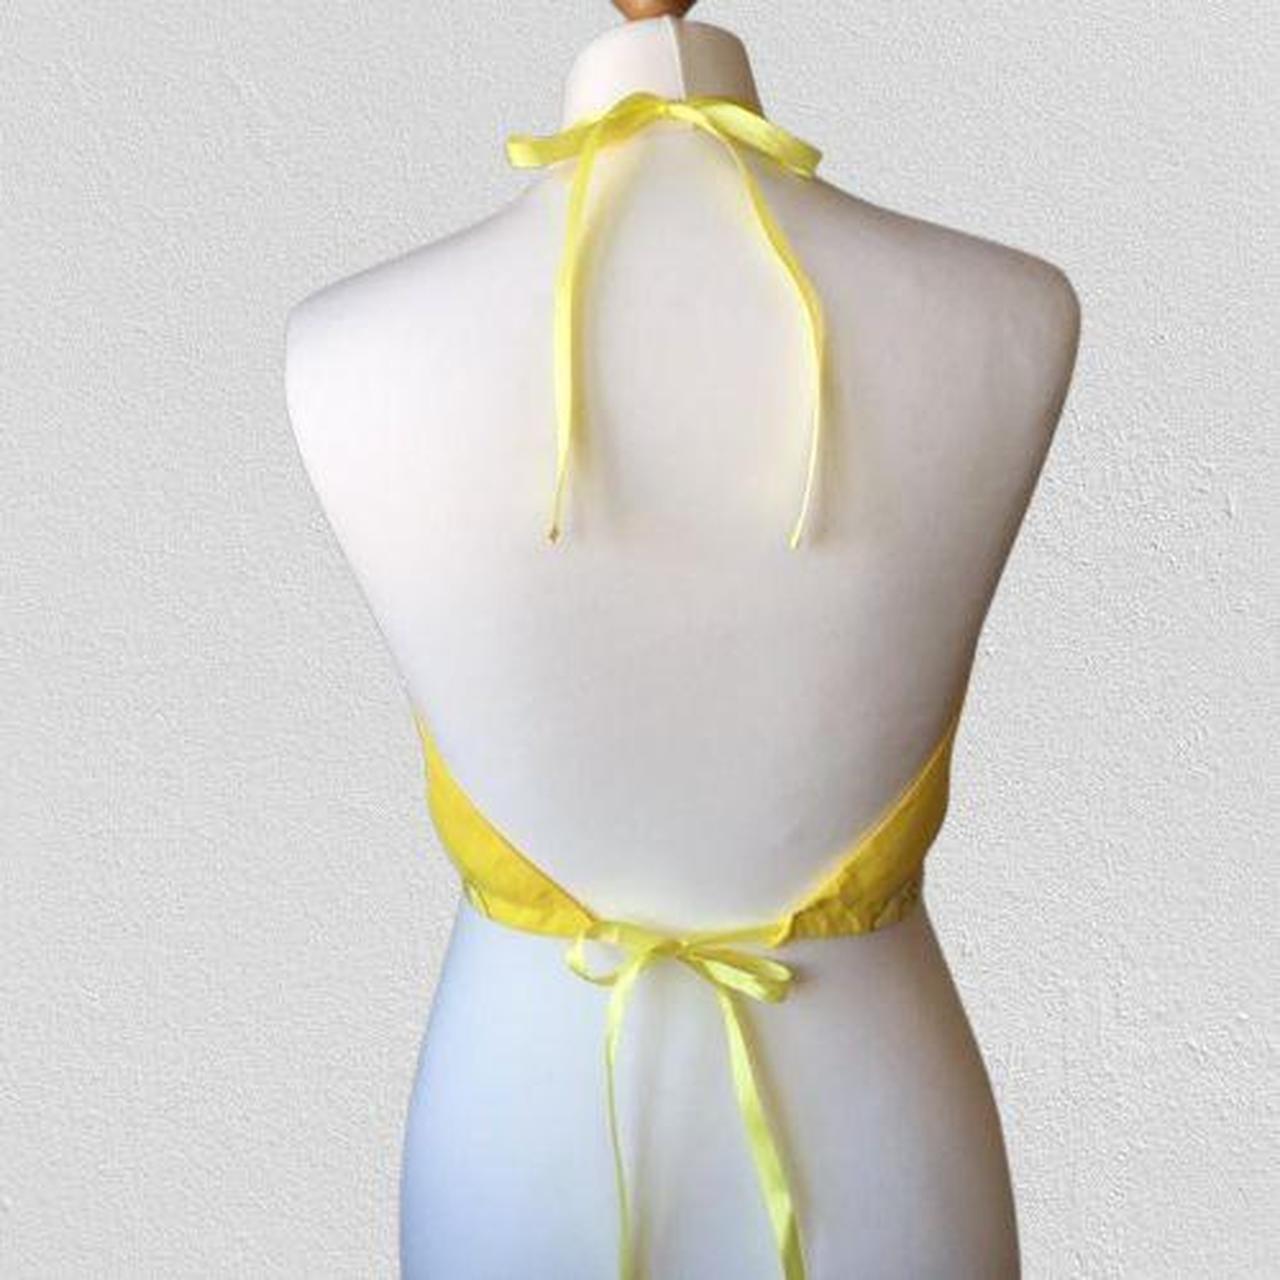 Handmade NEW yellow bandana halter neck crop top.... - Depop